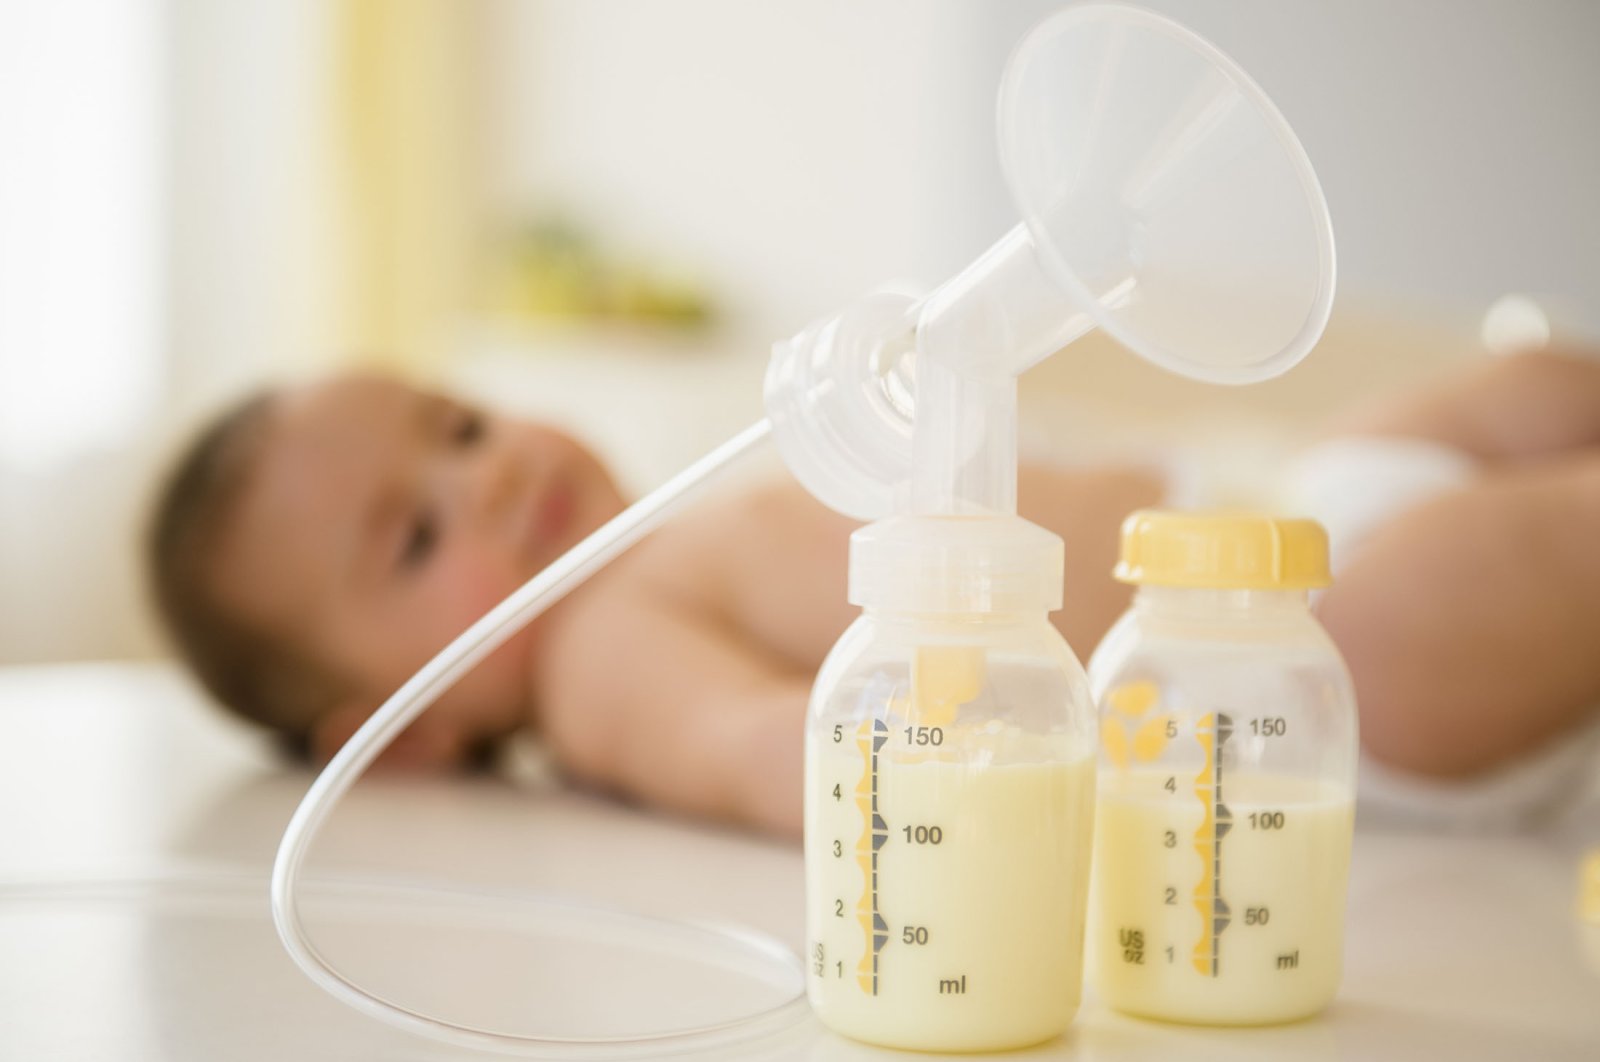 ASI secara signifikan mengurangi risiko infeksi pada bayi